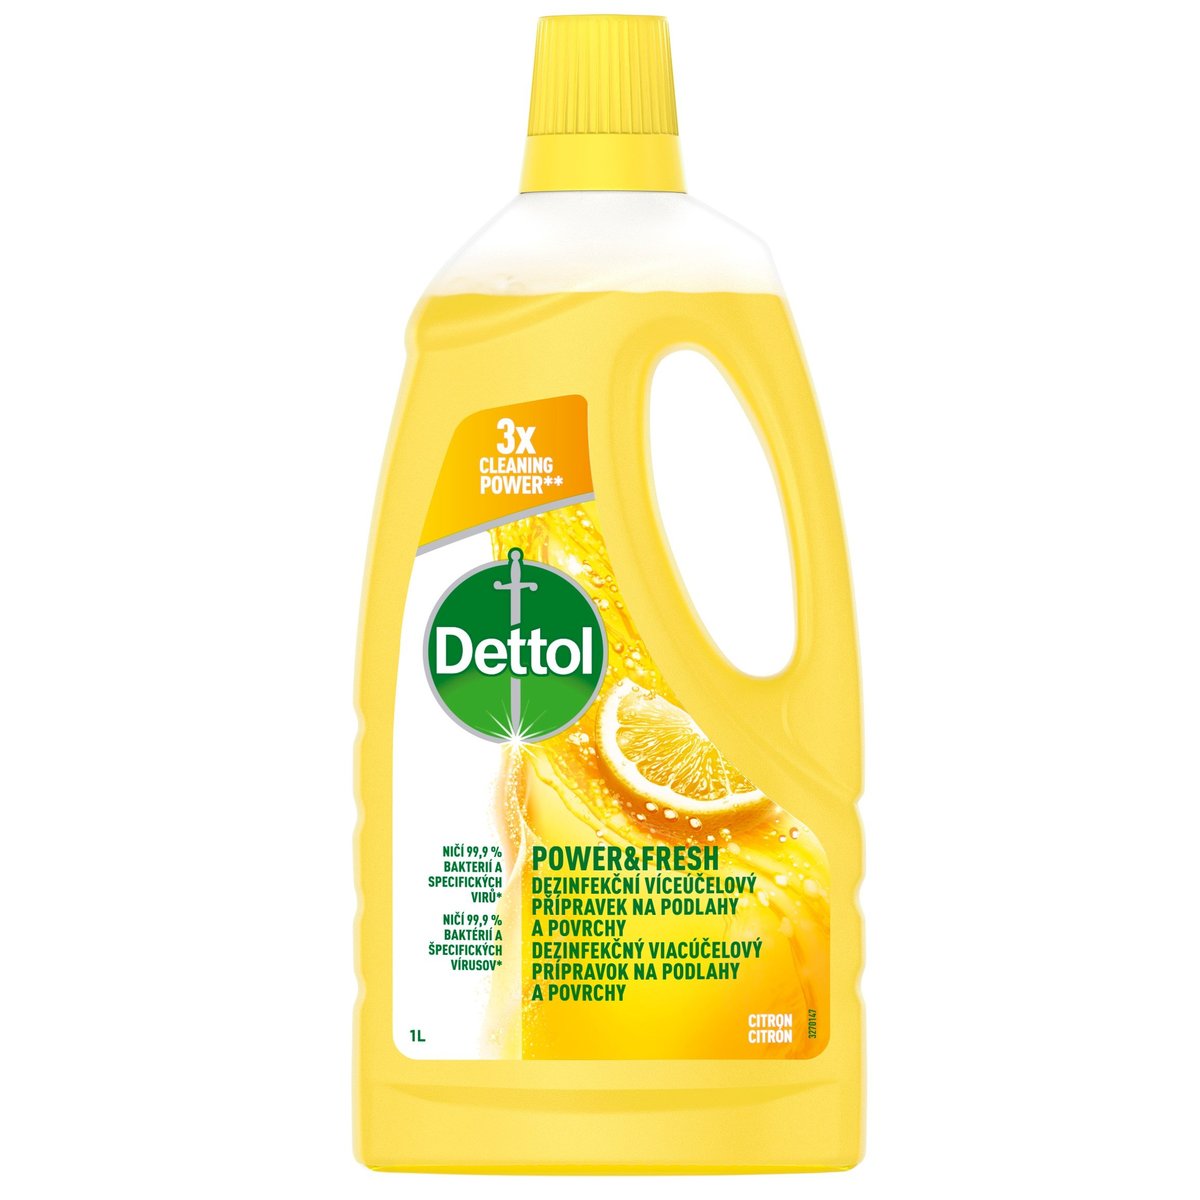 Dettol Dezinfekční víceúčelový přípravek na podlahy a povrchy – citron